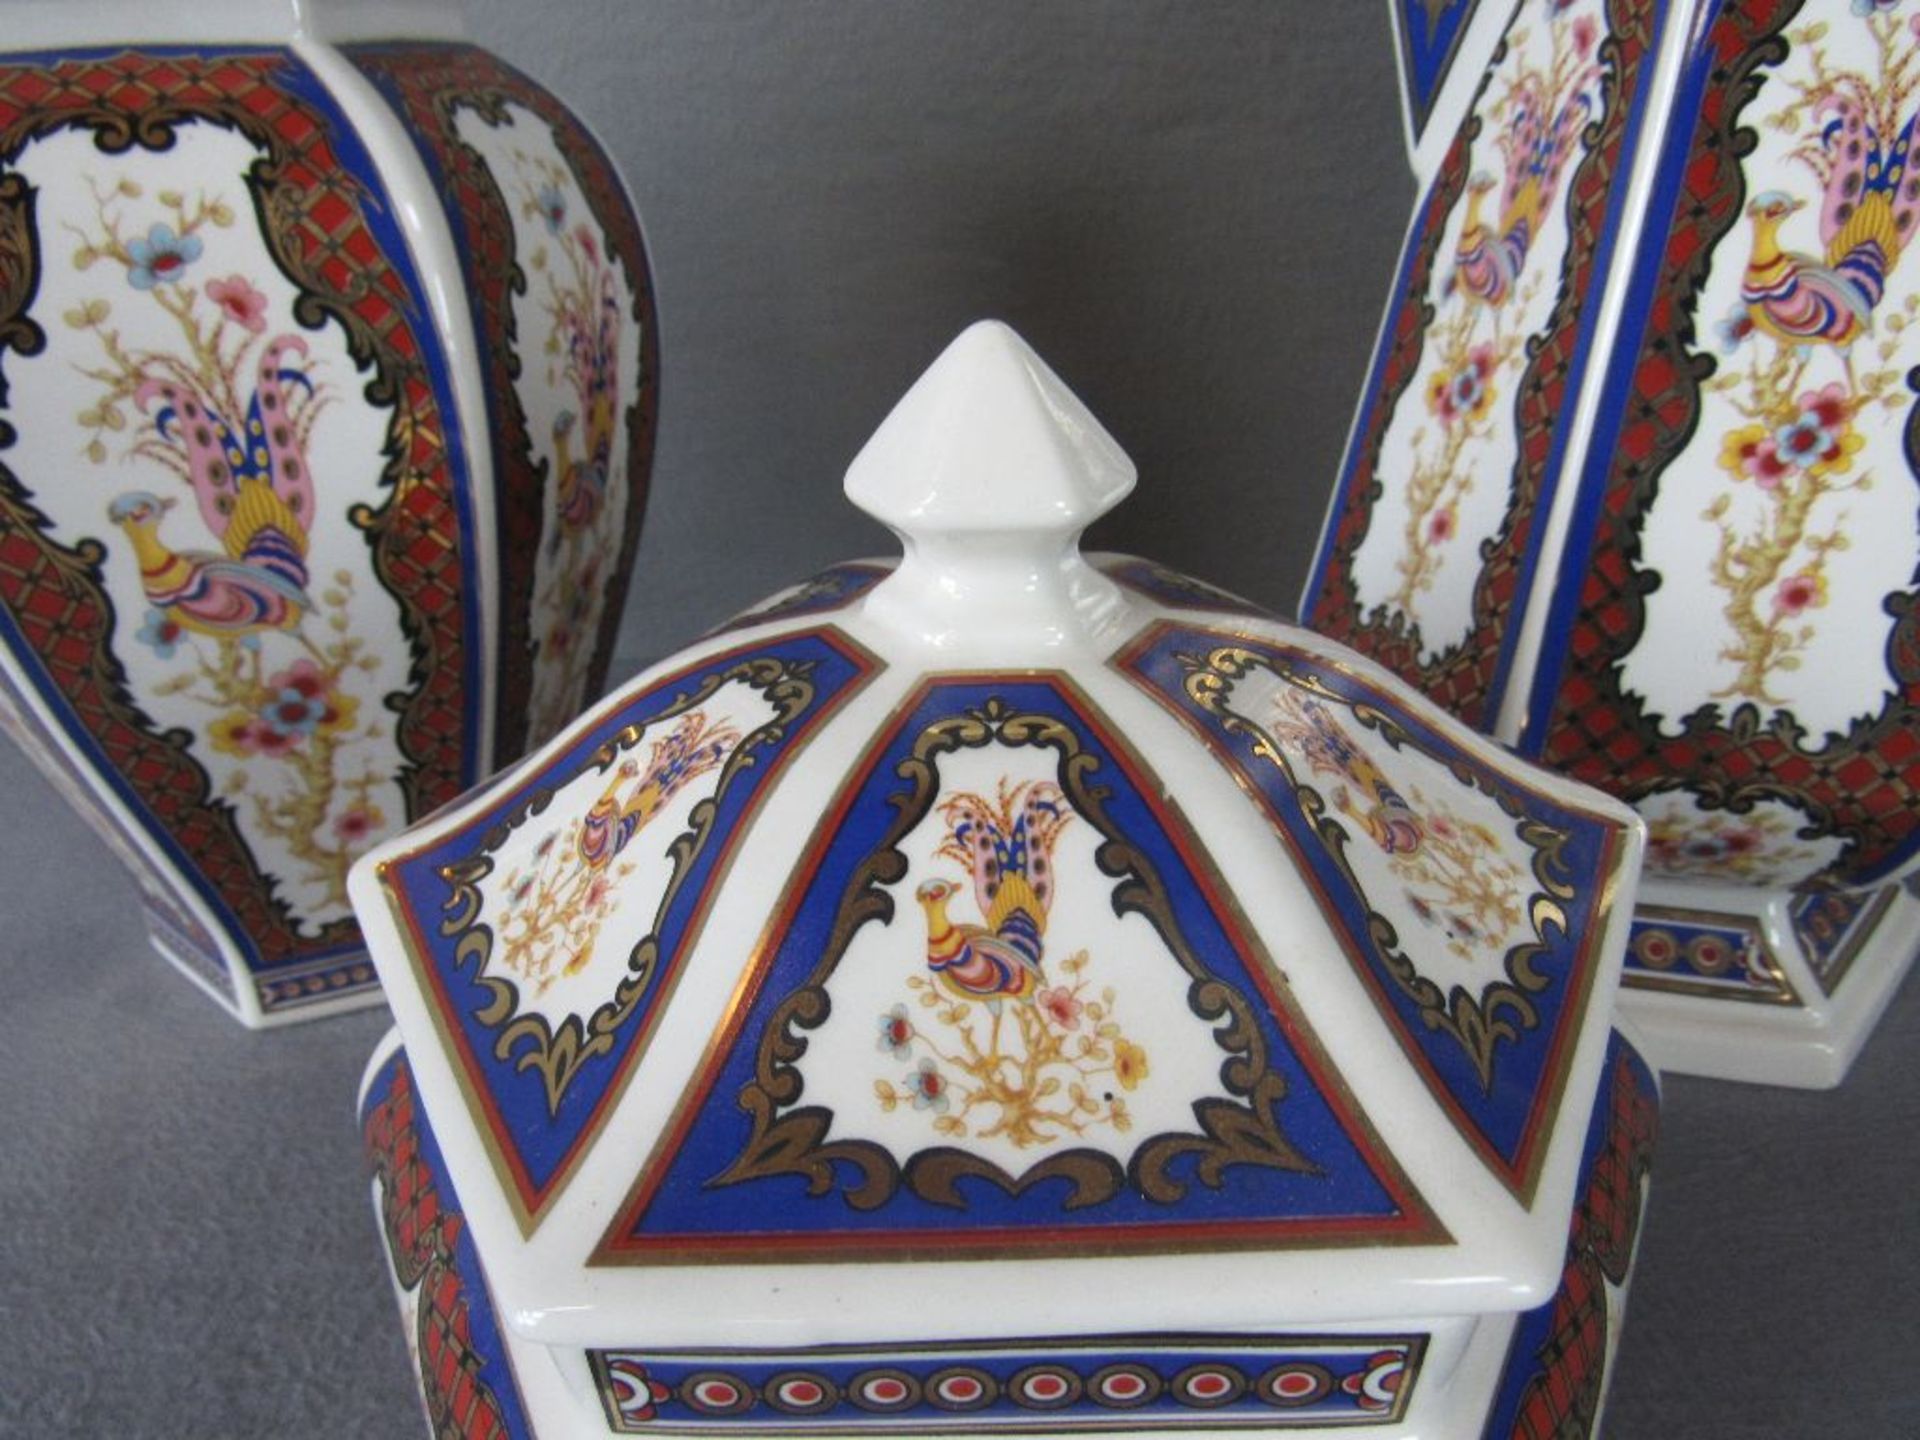 Drei Teile italienische Keramik Hersteller B&G farbenfroh mit Feuervogel von 19,5-42cm - Image 3 of 6